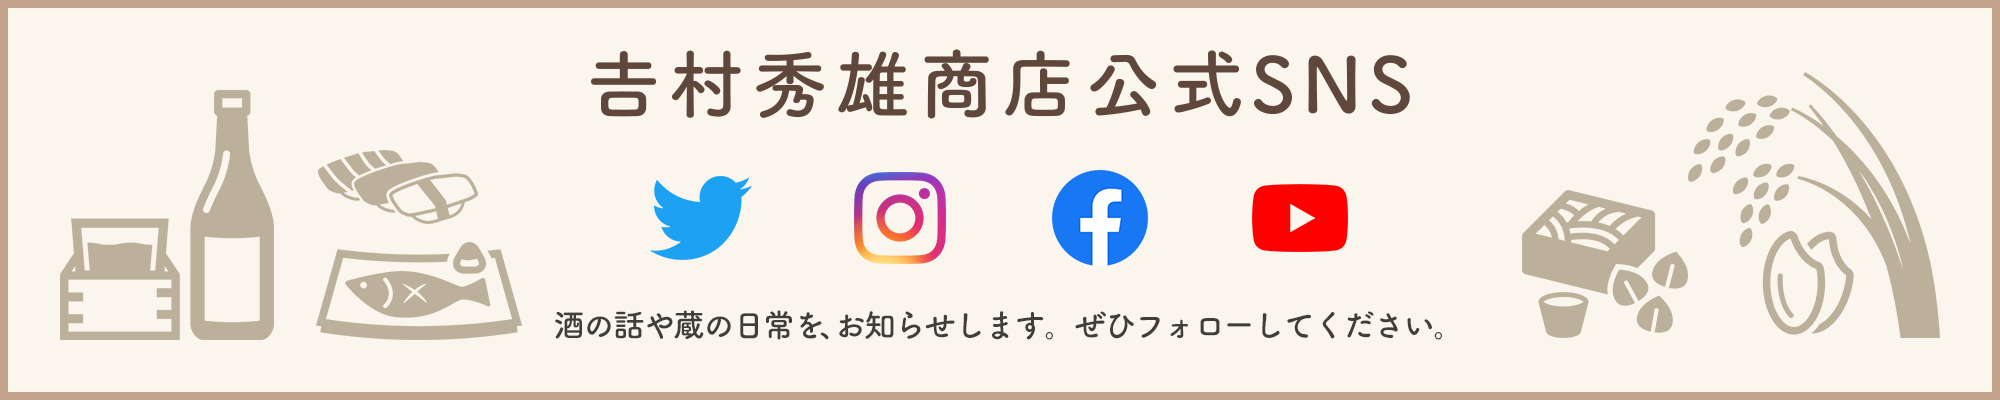 𠮷村秀雄商店公式SNS 蔵の日常、新製品・イベント情報をお知らせします。